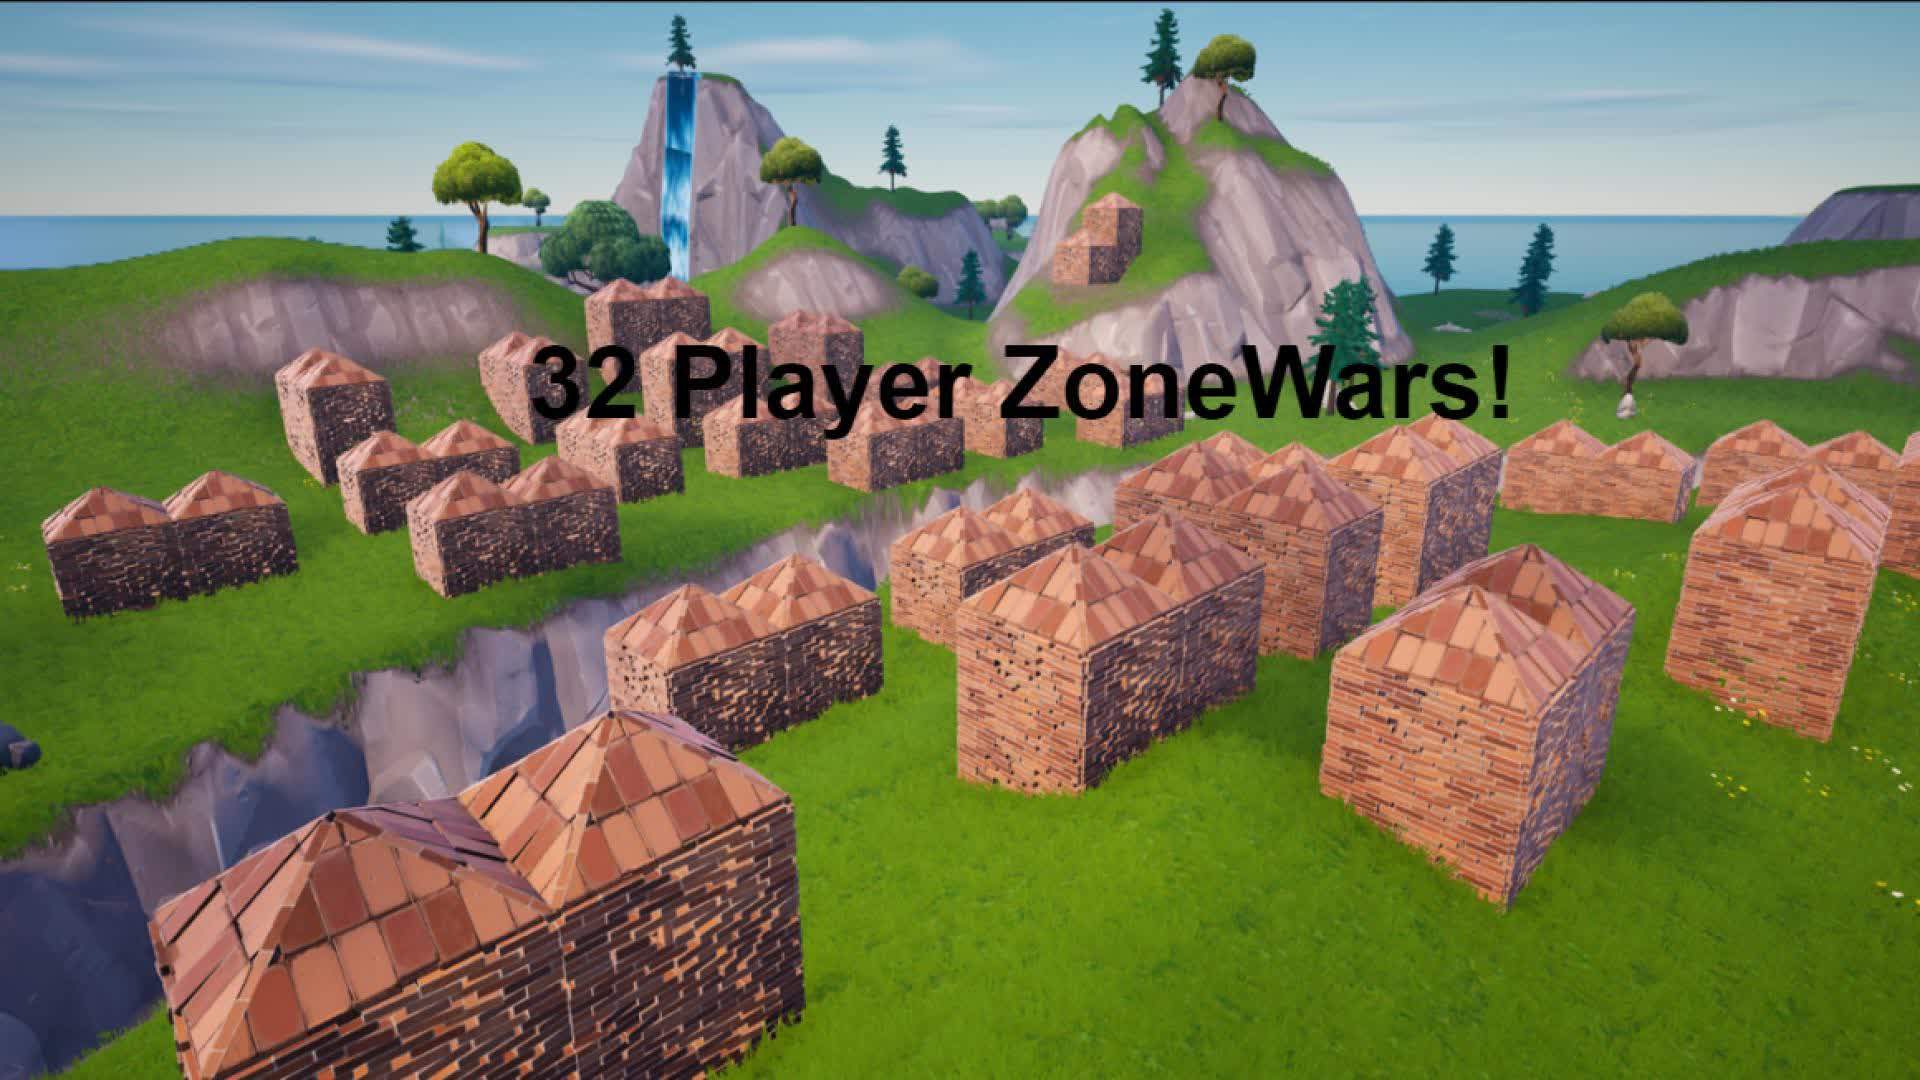 32 Player Zonewars